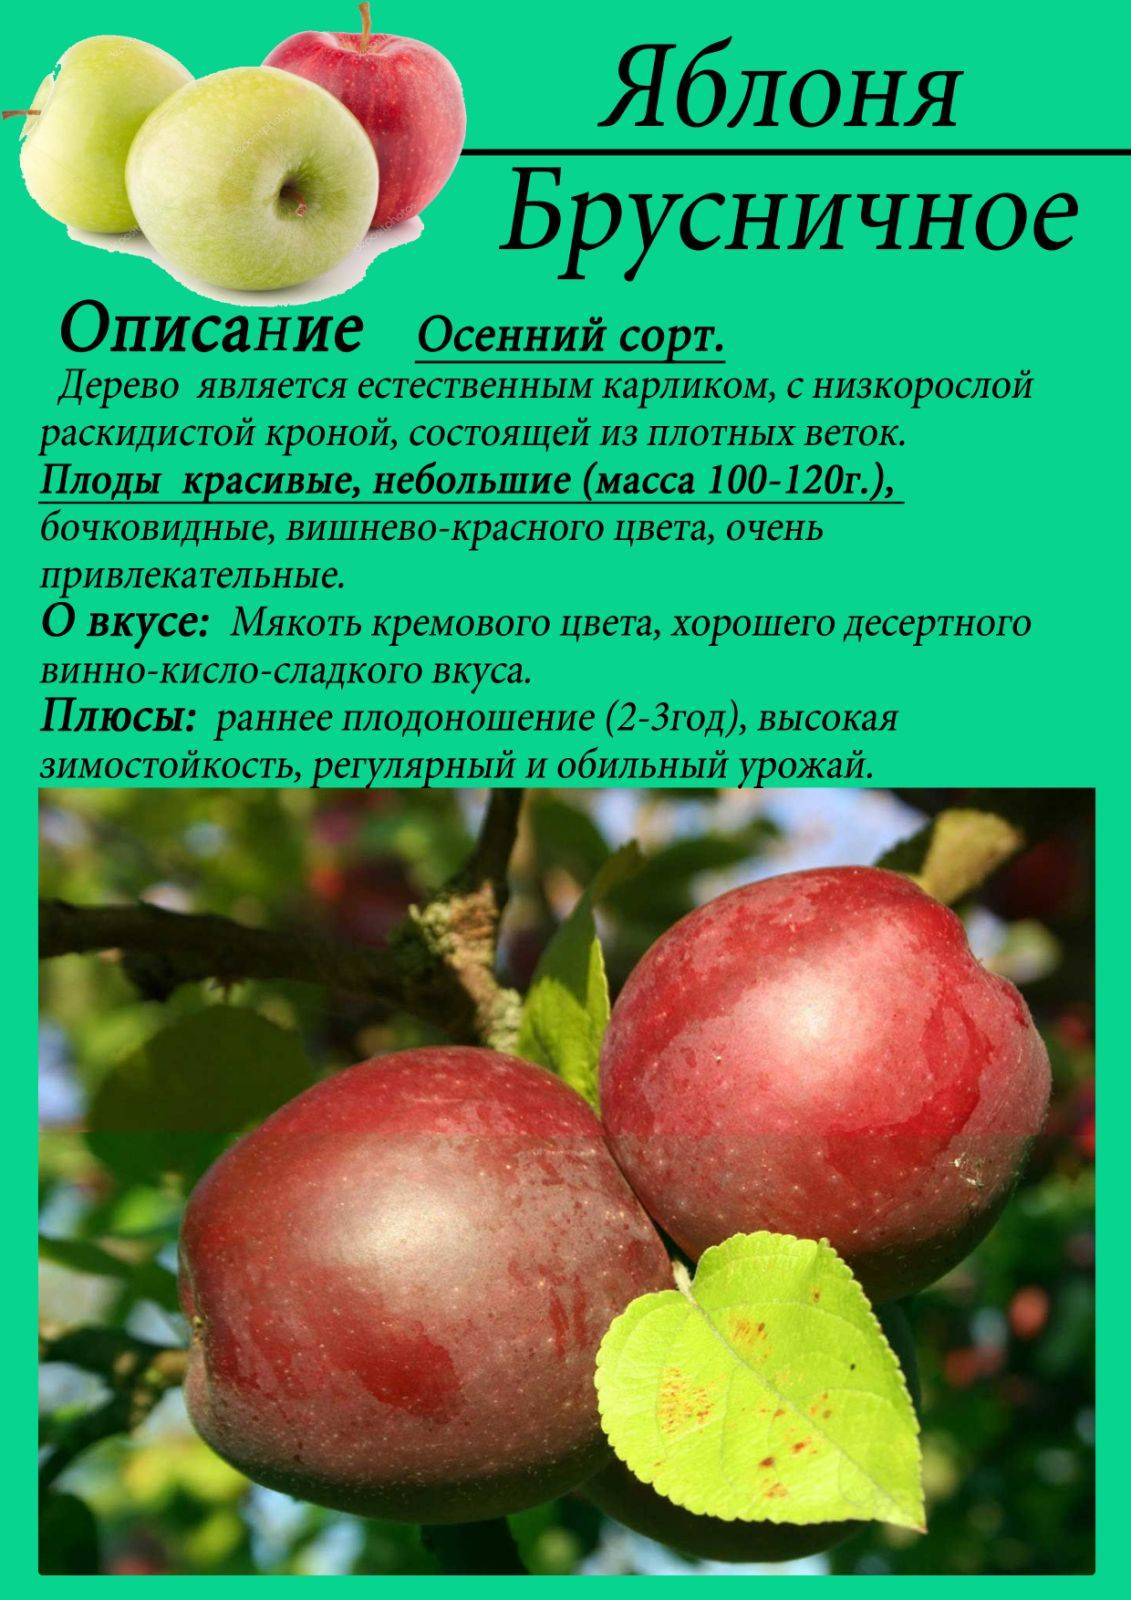 Яблоня ауксис: плюсы и минусы, описание сорта, фото, советы по выращиванию, вкусовые качества яблок, отзывы садоводов